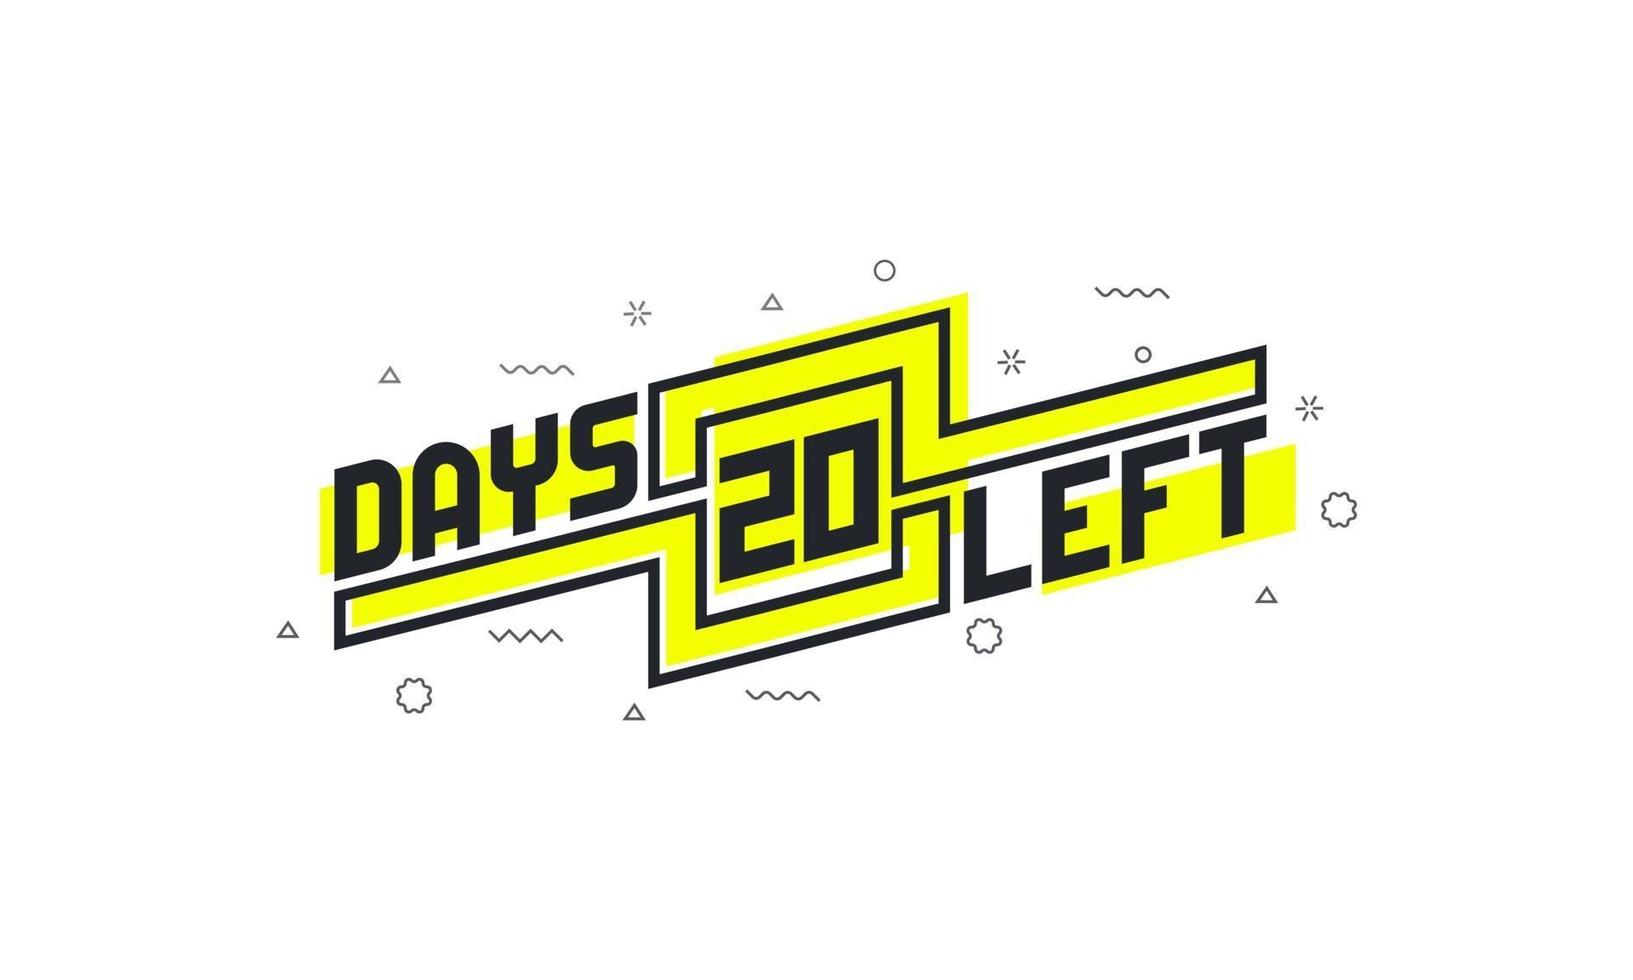 Noch 20 Tage Countdown-Zeichen zum Verkauf oder zur Promotion. vektor